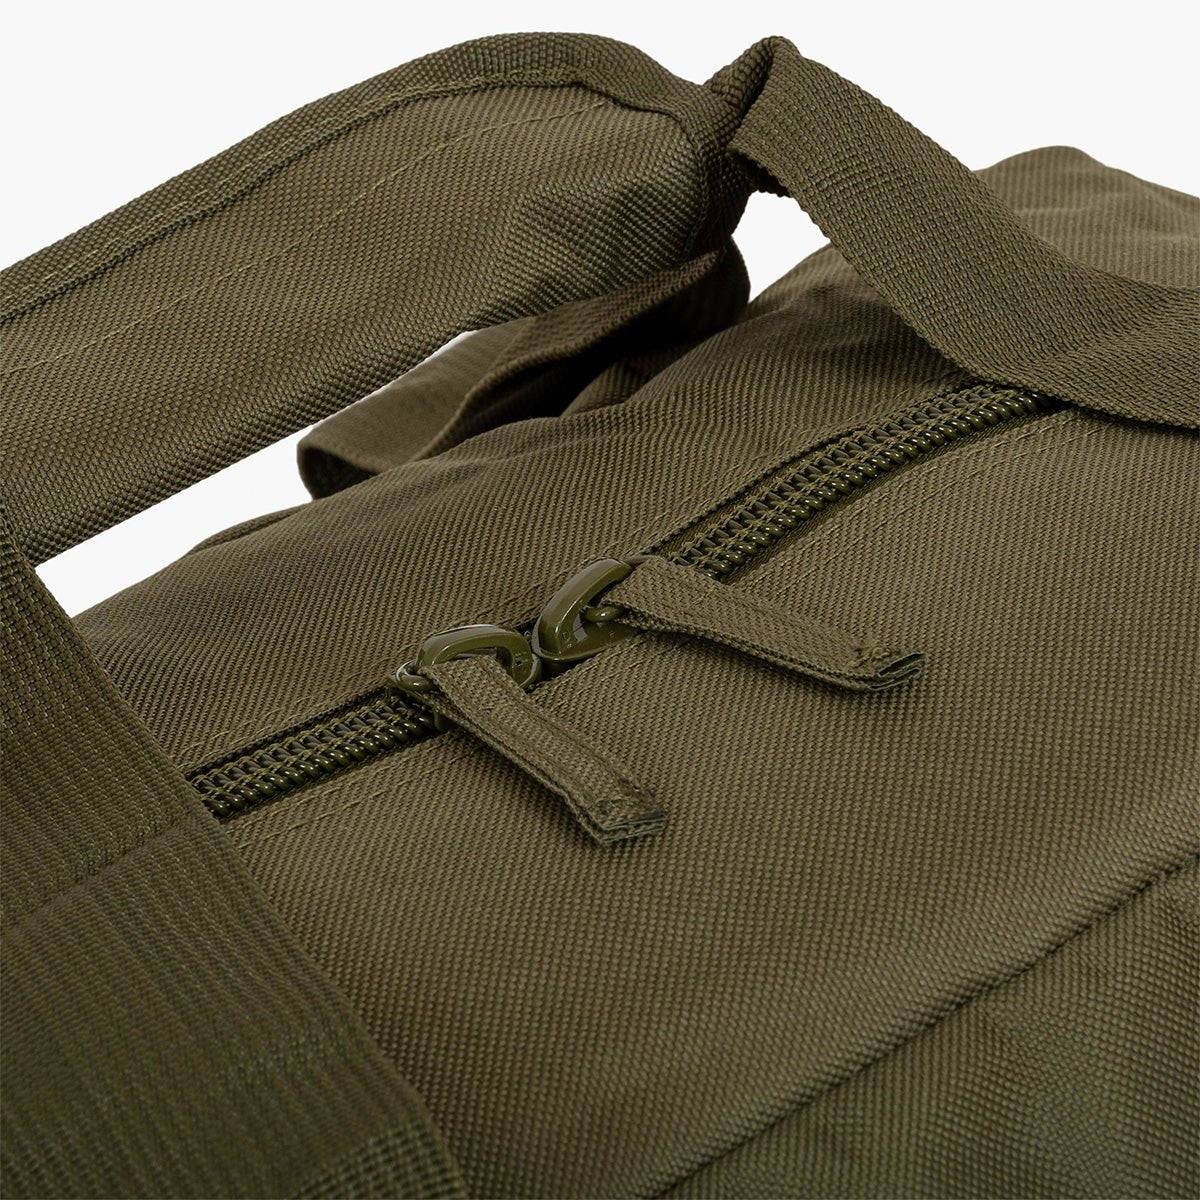 Highlander Cargo 65 Litre Carry Bag - John Bull Clothing